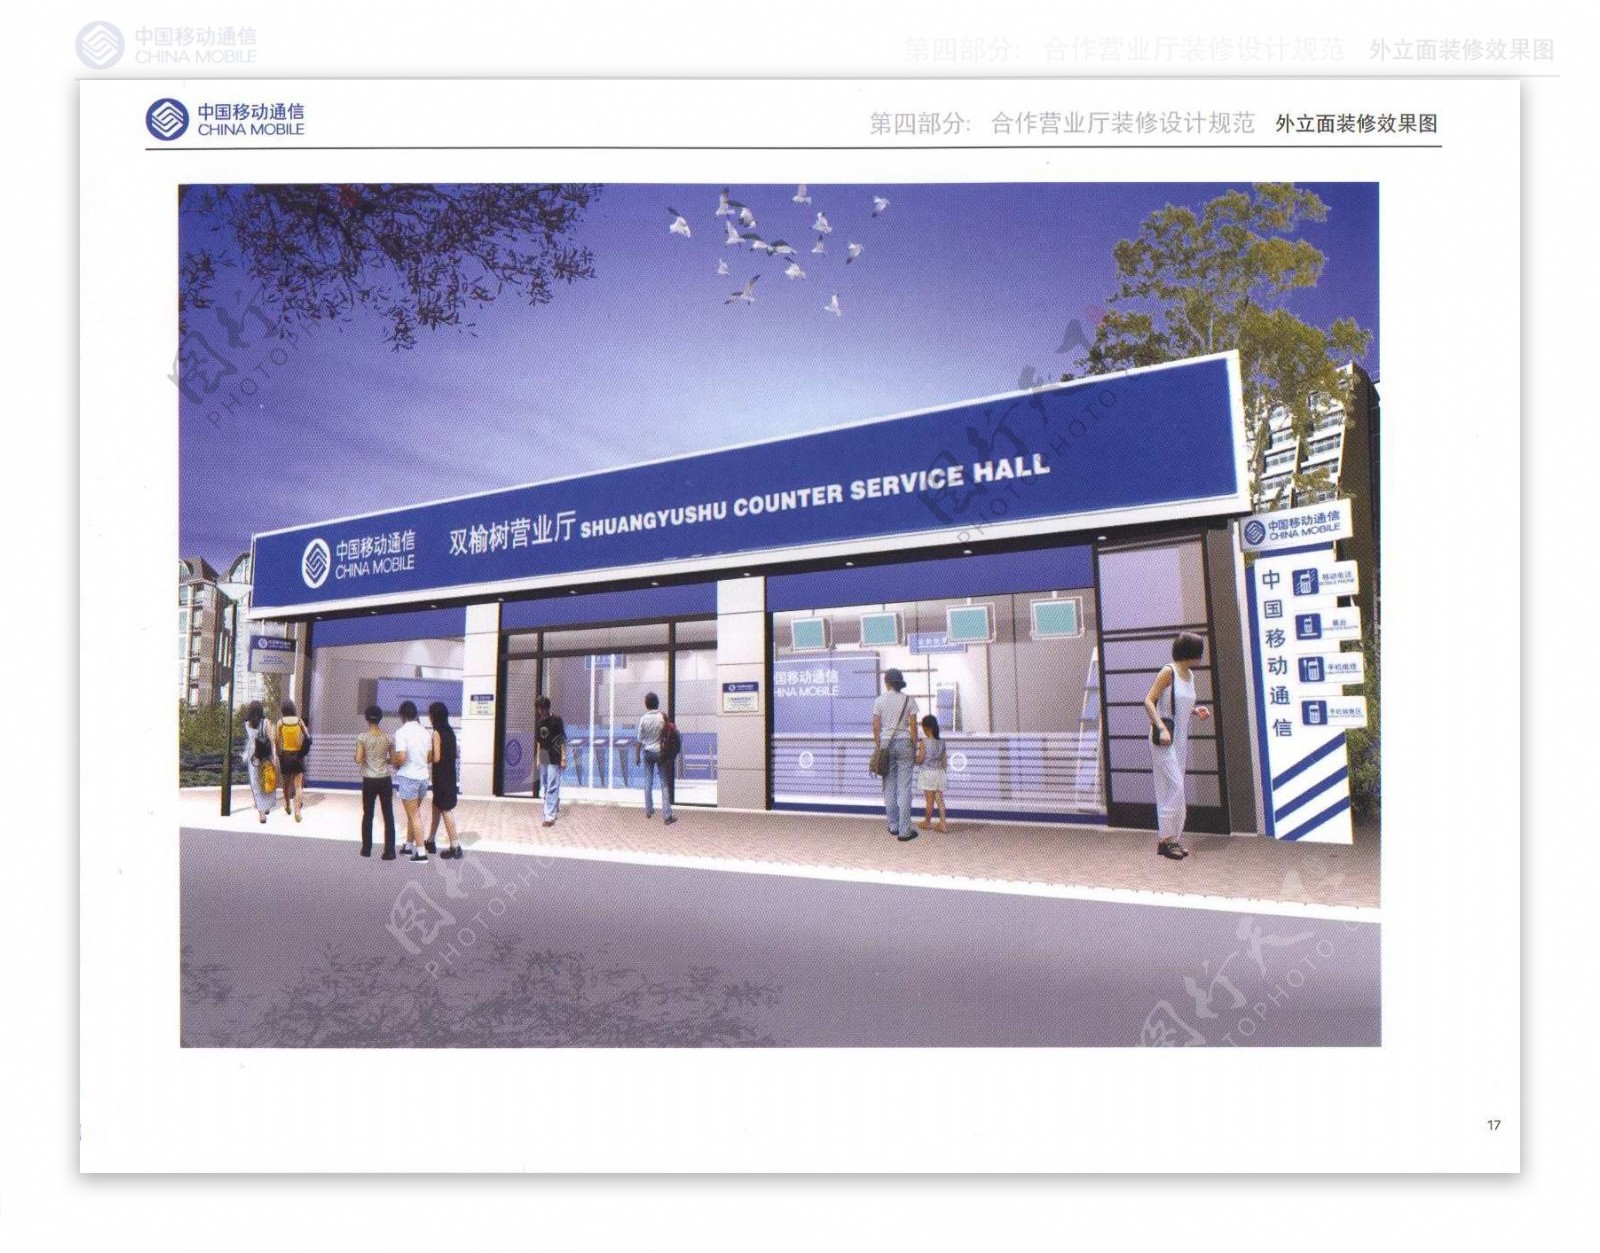 中国移动社会代理店装修设计规范全套图片